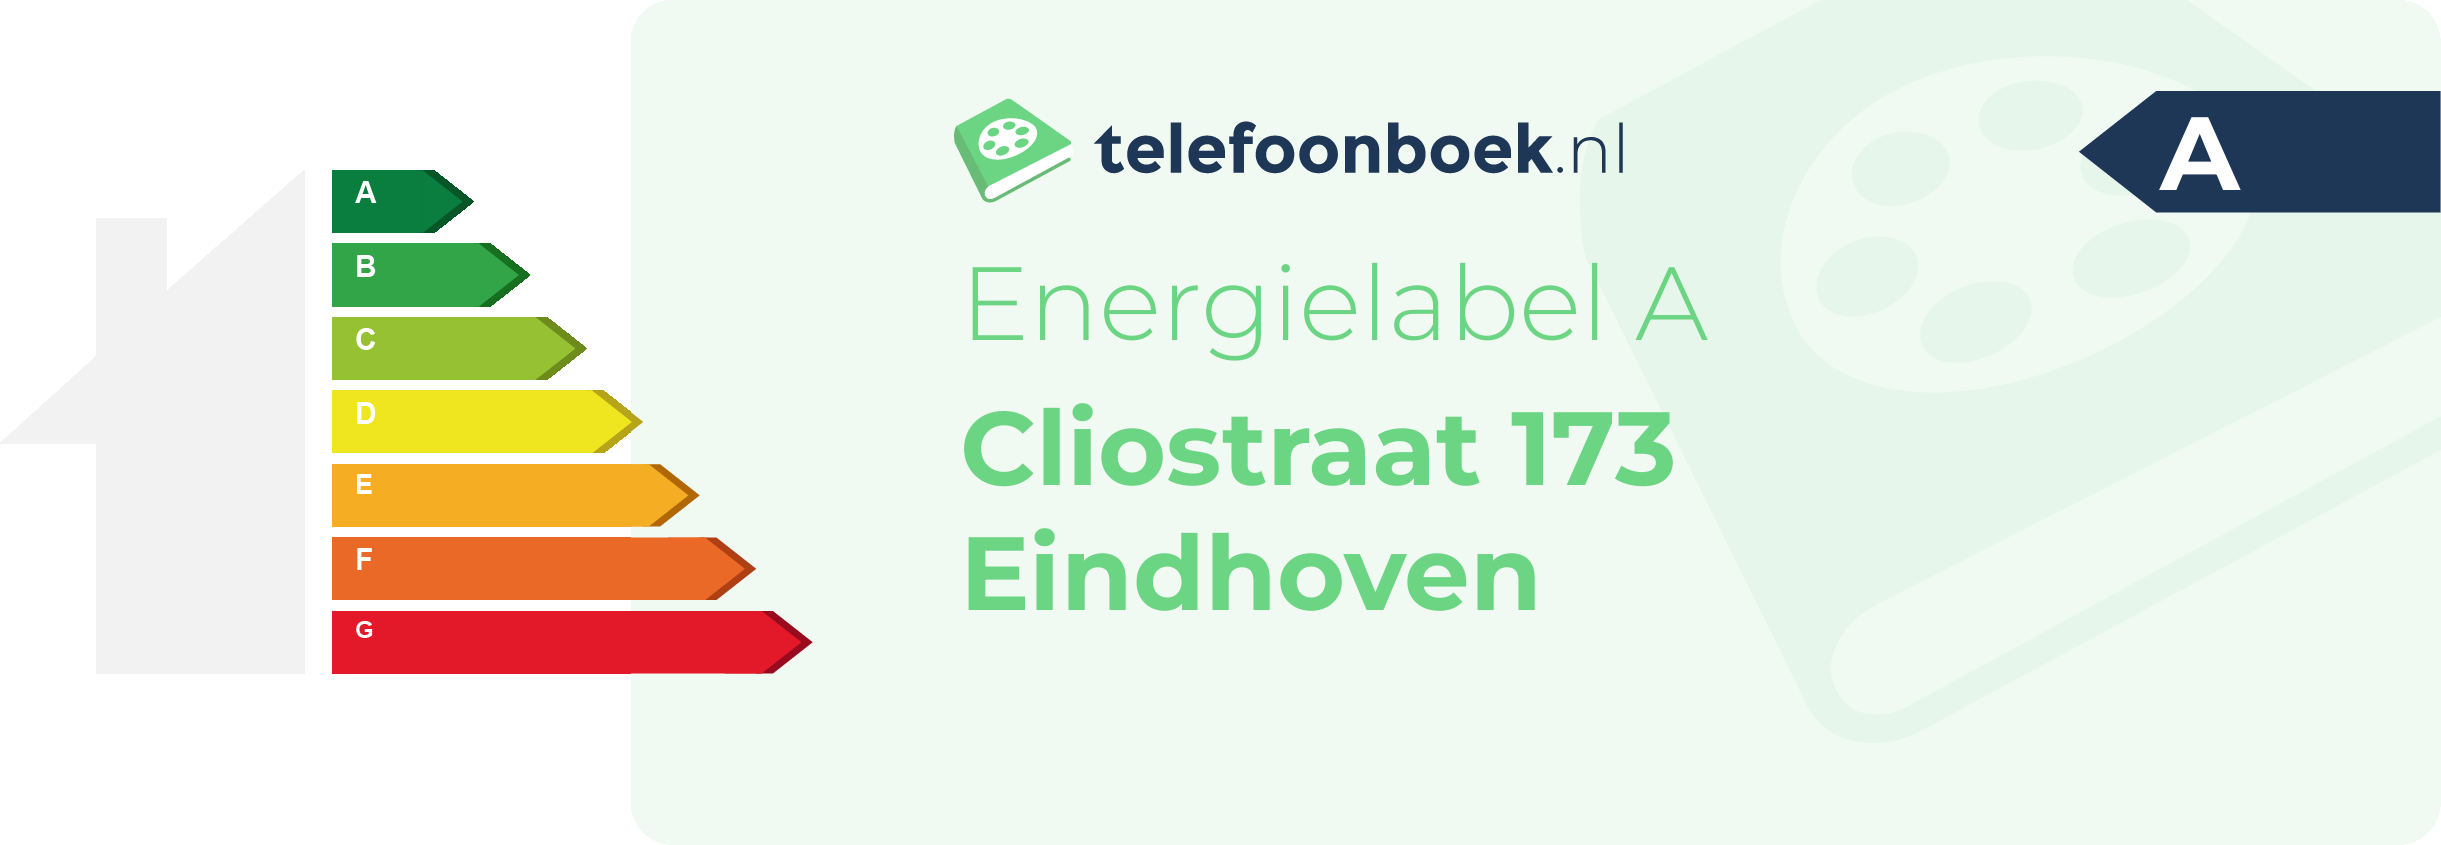 Energielabel Cliostraat 173 Eindhoven